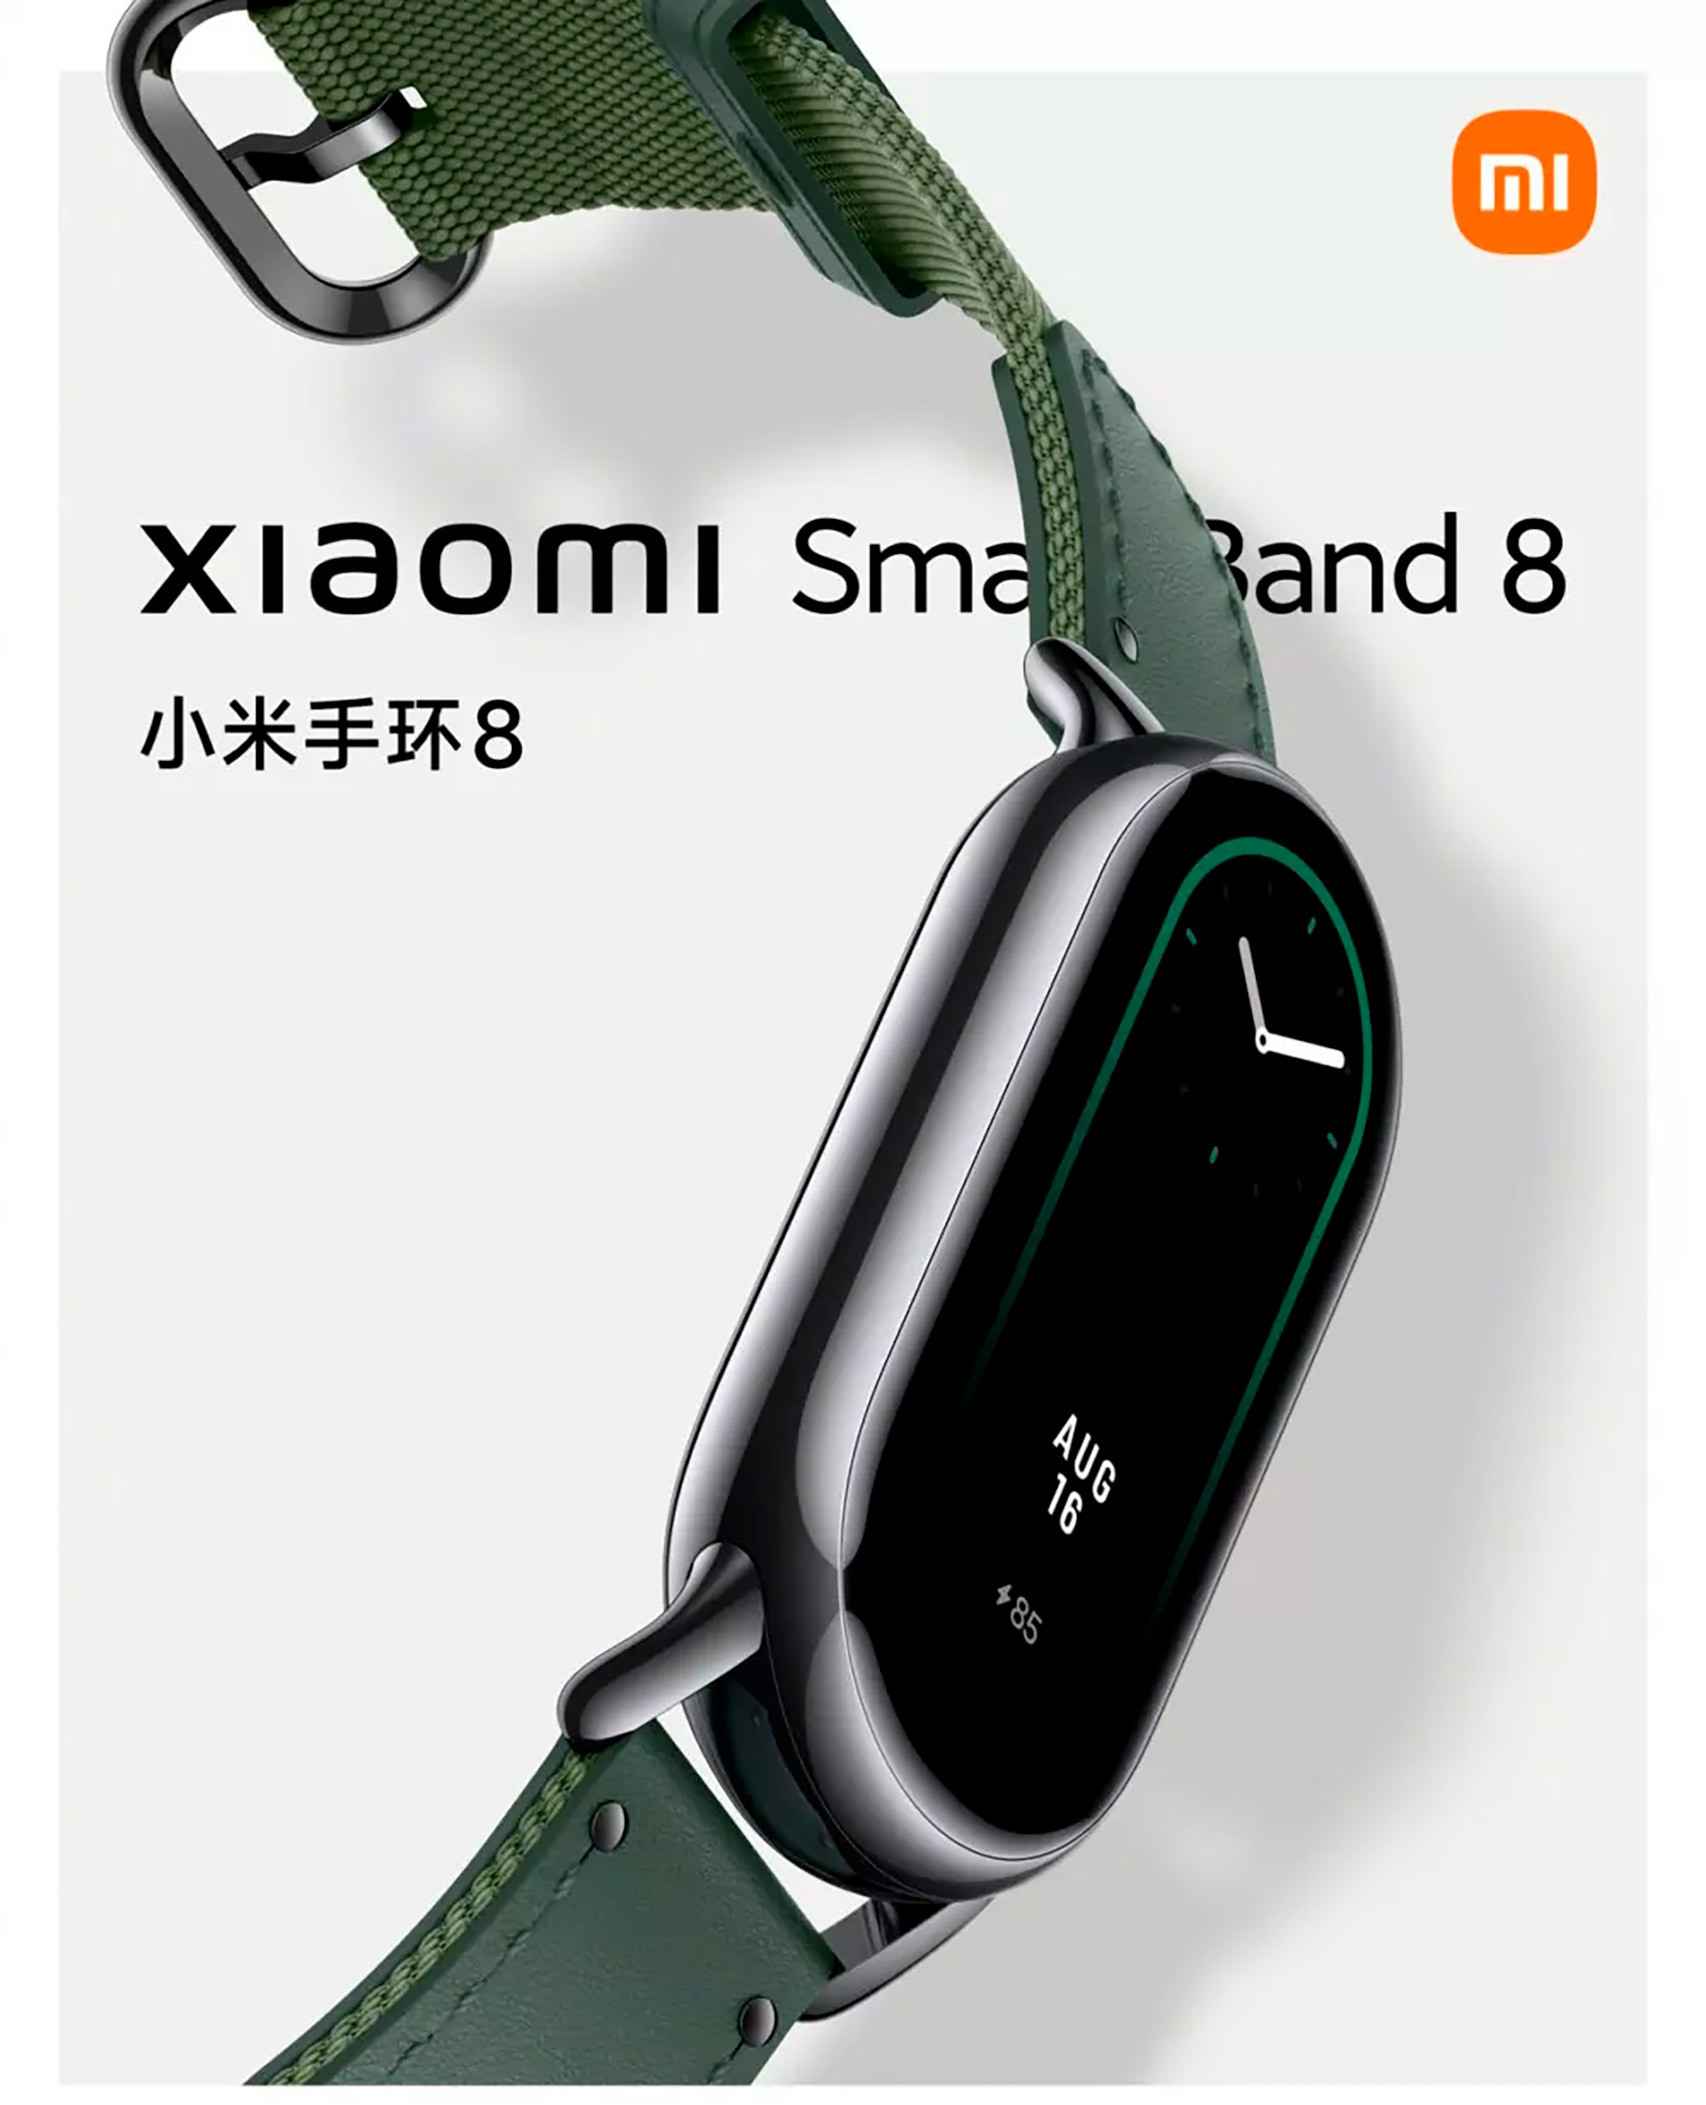 Diferencias entre la Xiaomi Smart Band 8 española y china